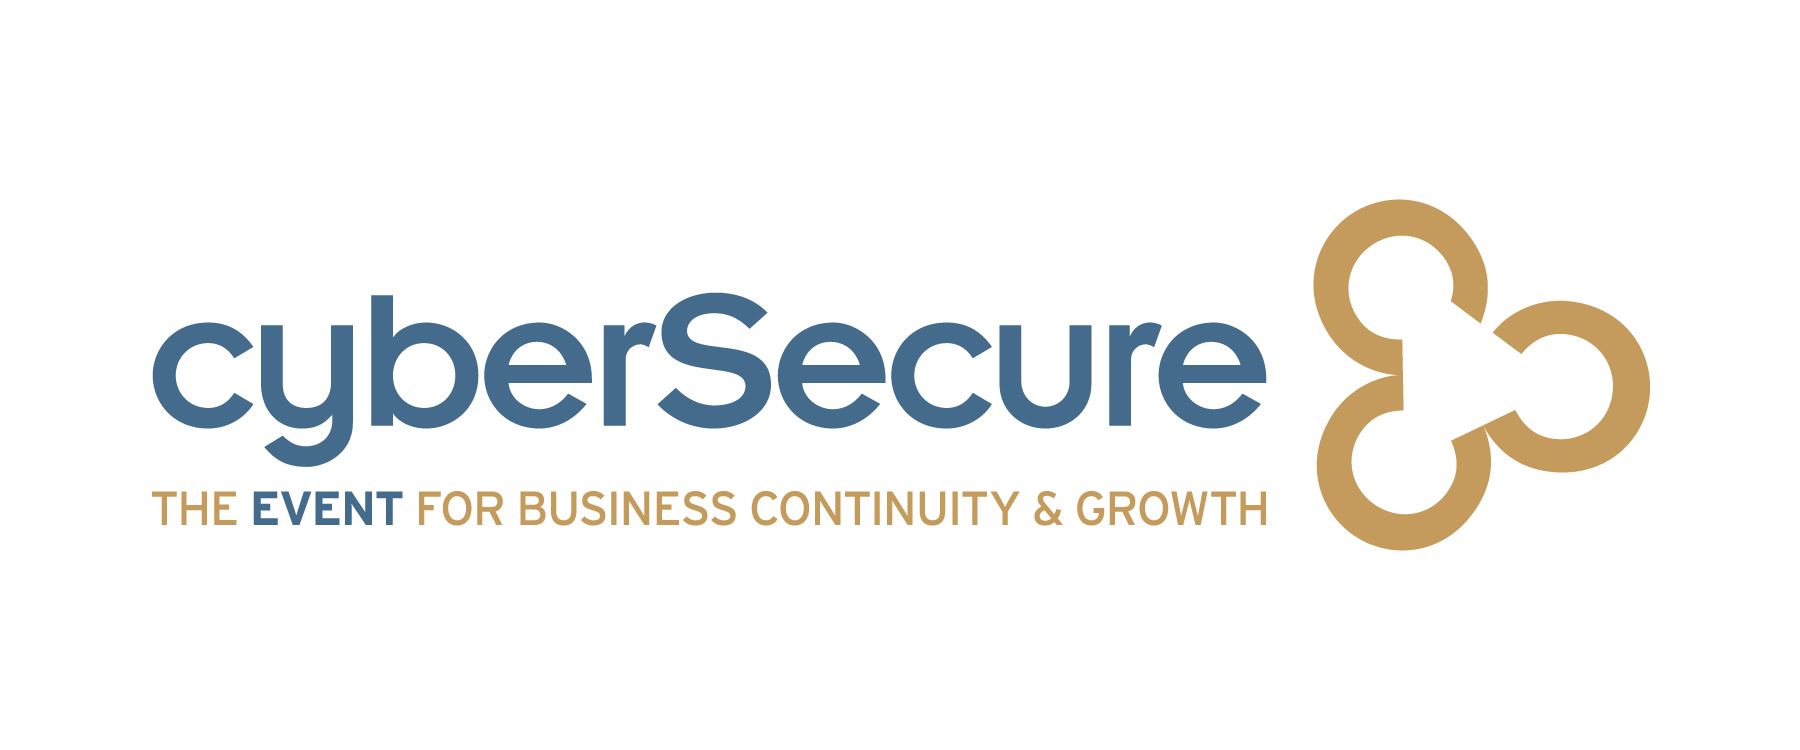 cyberSecure Logo 2017_Full Tagline - ALM